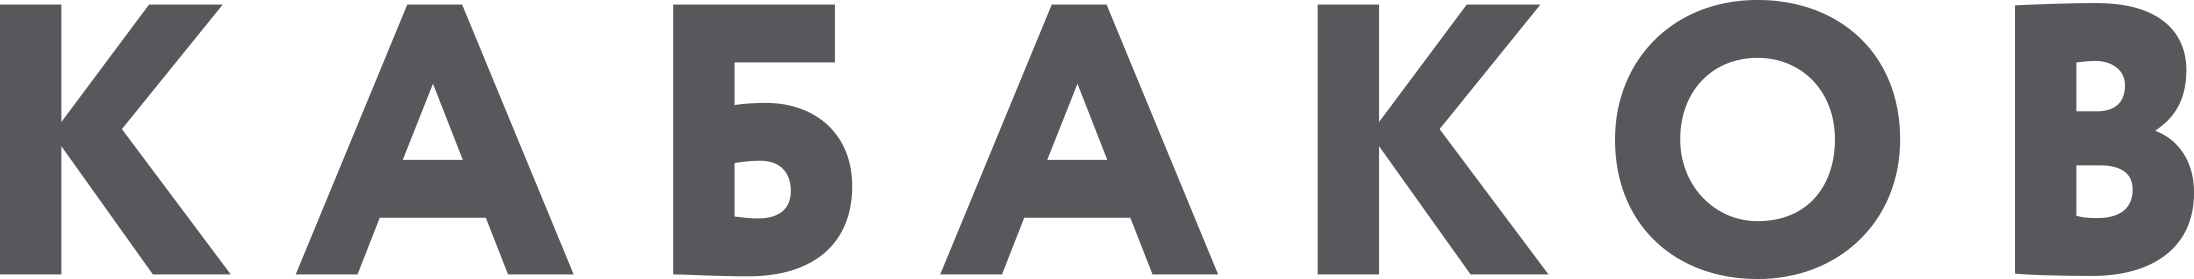 ilya kabakov official typographic logo